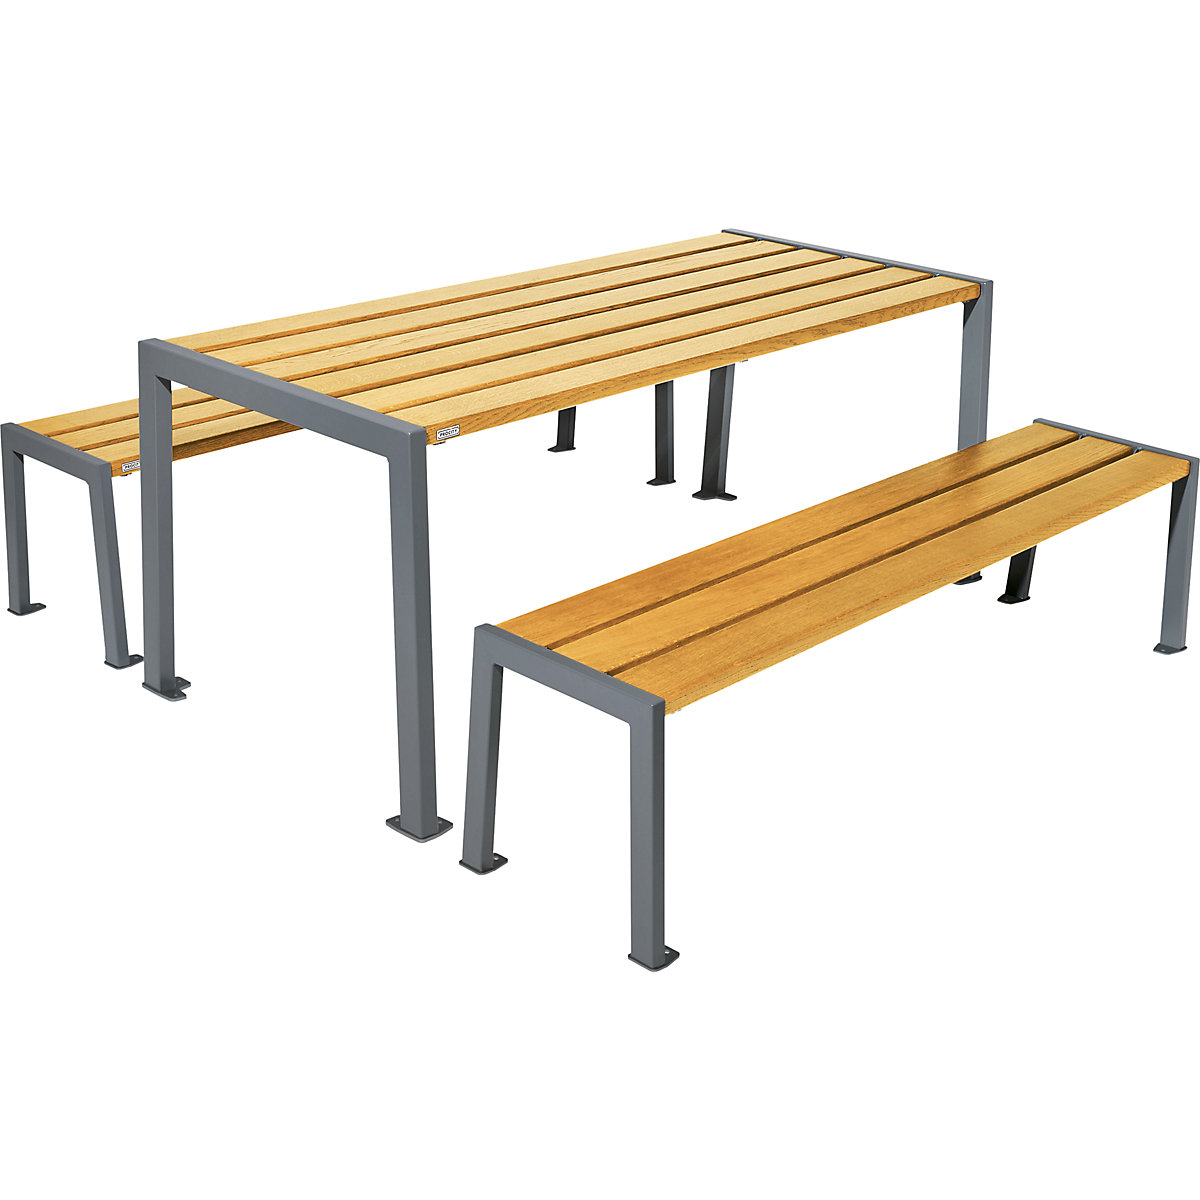 Garnitura mize in klopi Silaos® – PROCITY, dolžina 1800 mm, sive barve / svetli hrast-4